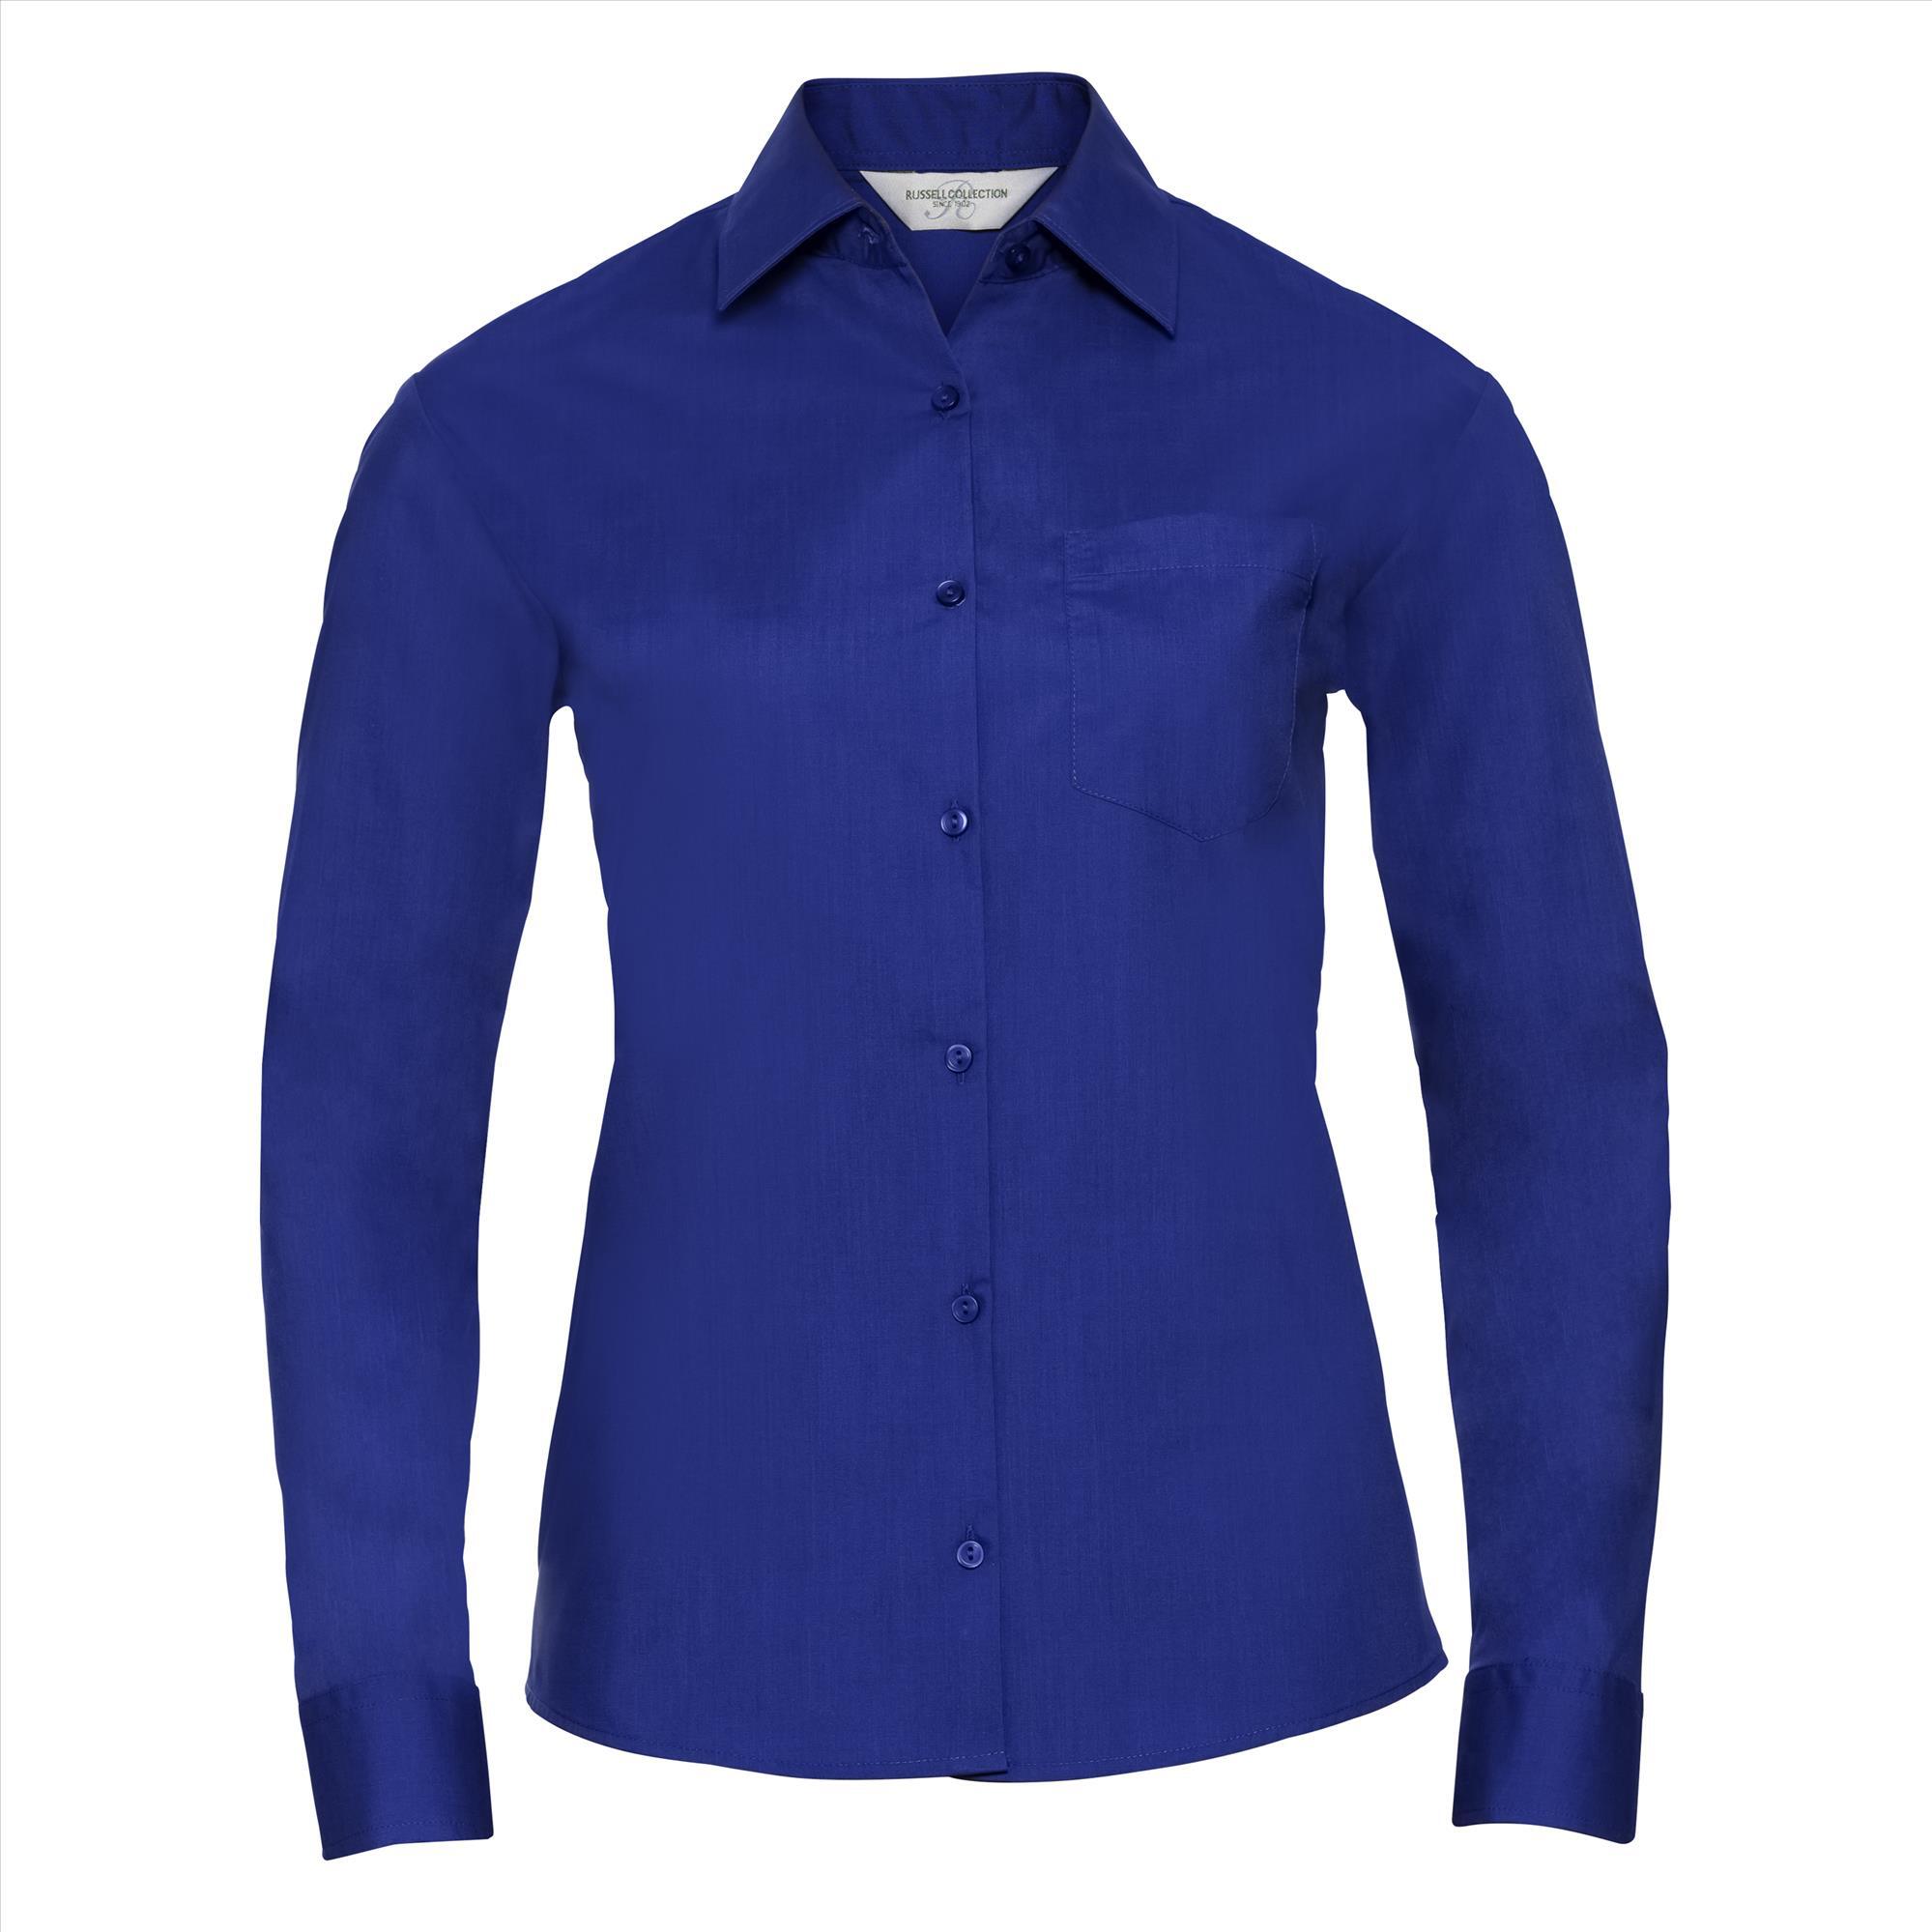 Dames blouse met klassieke kraag royal blauw perfect voor bedrukking bedrijfslogo